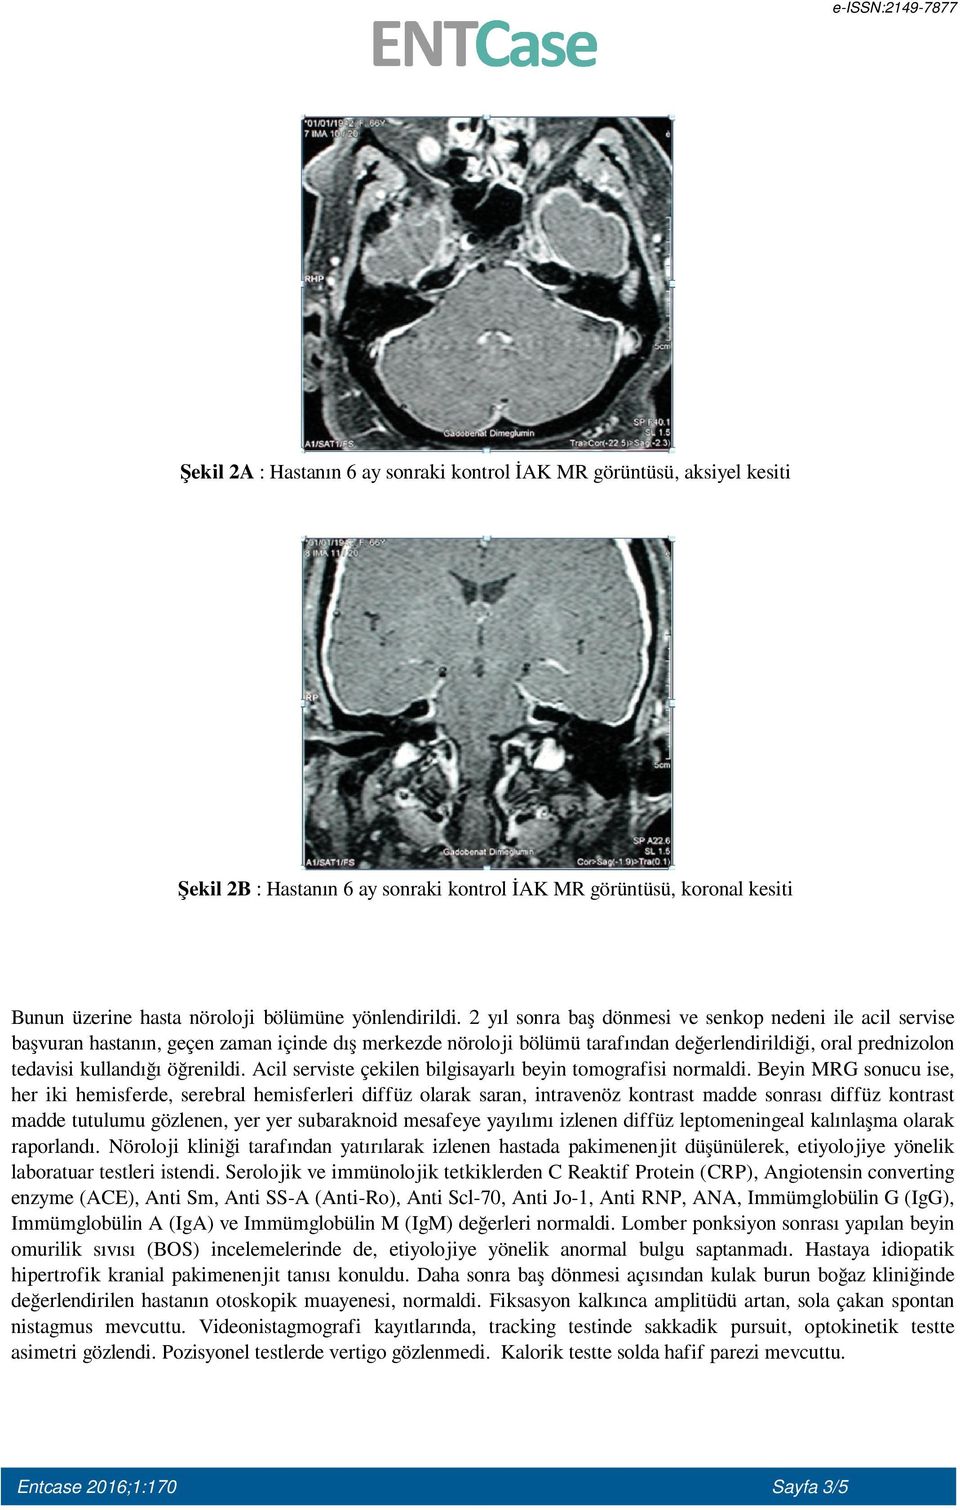 öğrenildi. Acil serviste çekilen bilgisayarlı beyin tomografisi normaldi.